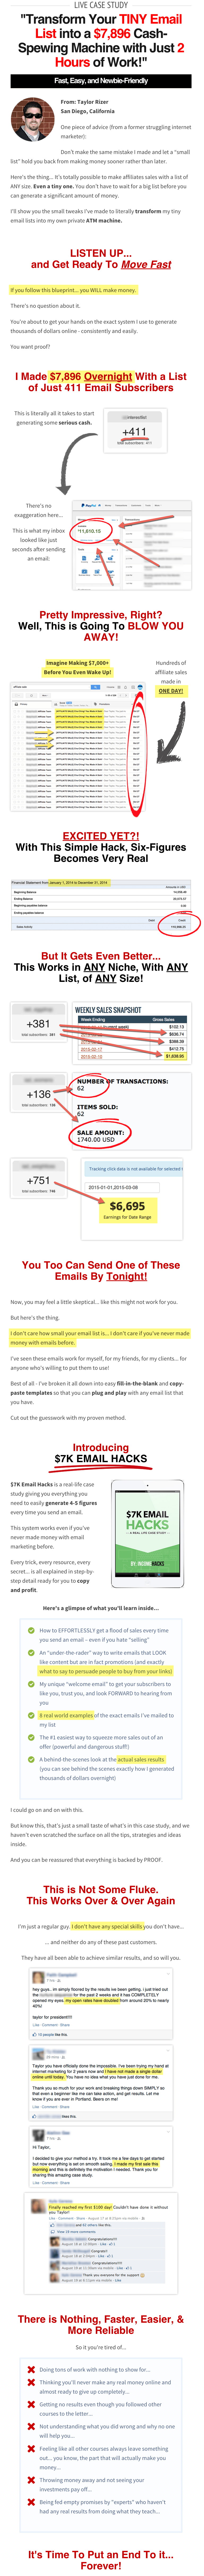 7k Email Hacks salespage1